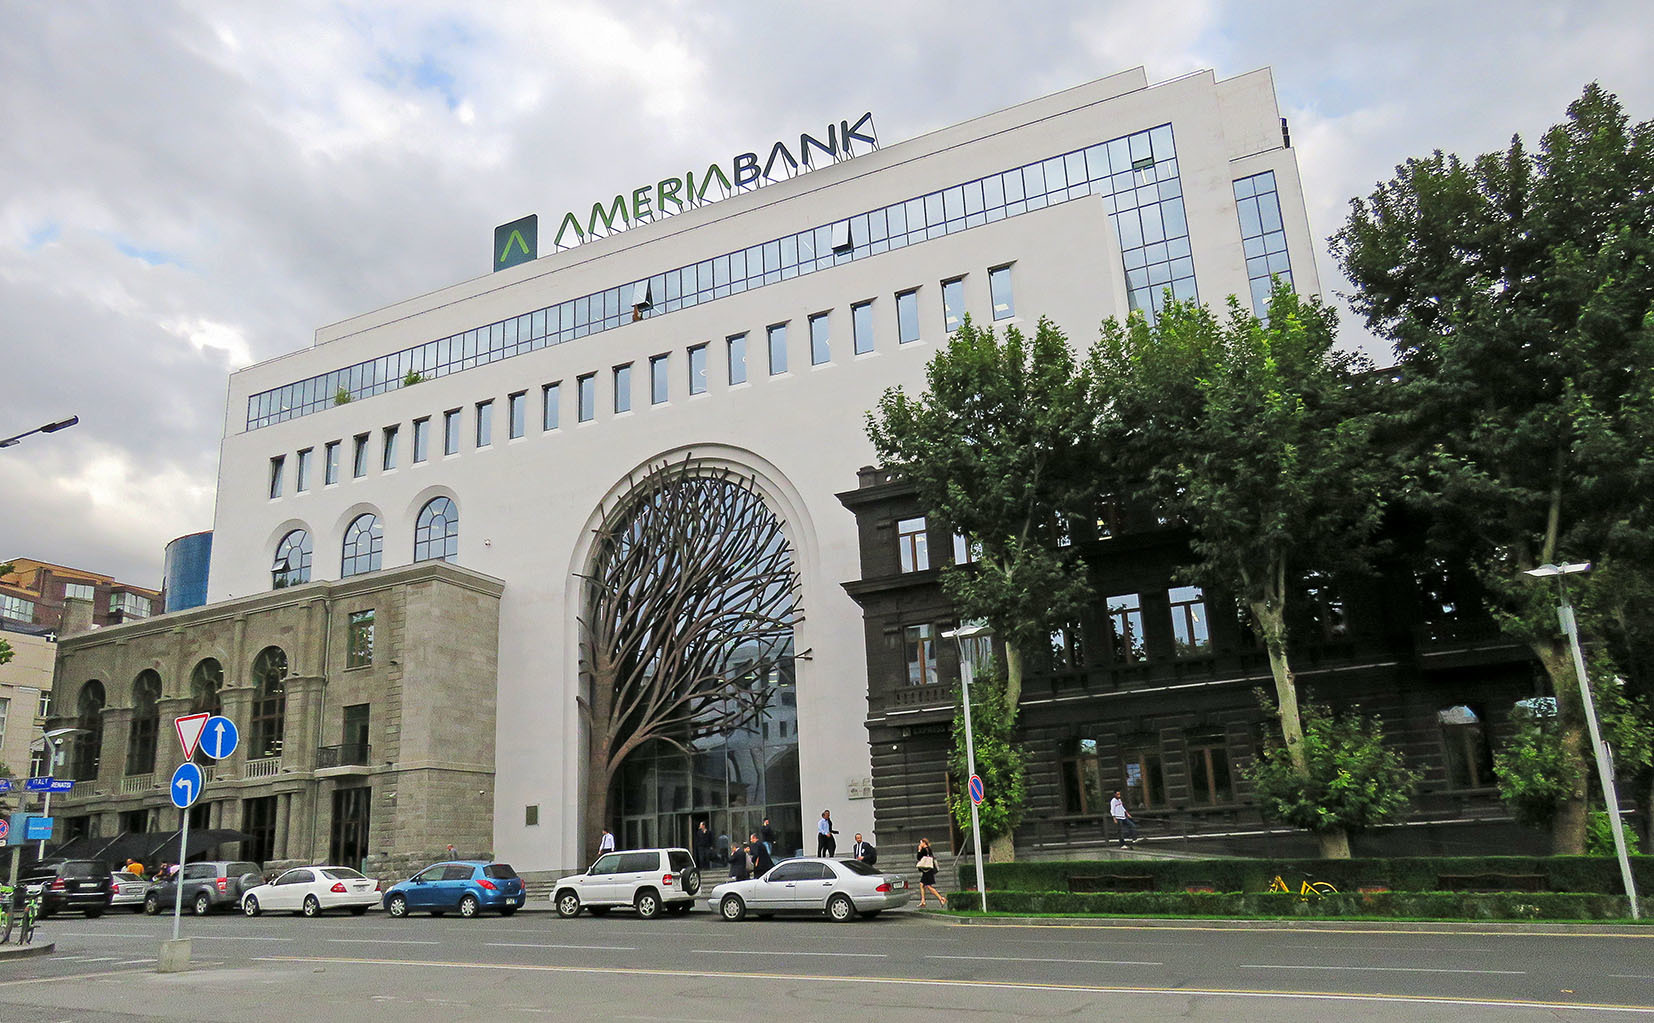 Агентства еревана. Америя банк Ереван дерево. Ереван здания. Здание в центре Еревана. Ameria Bank центральное отделение Ереван.